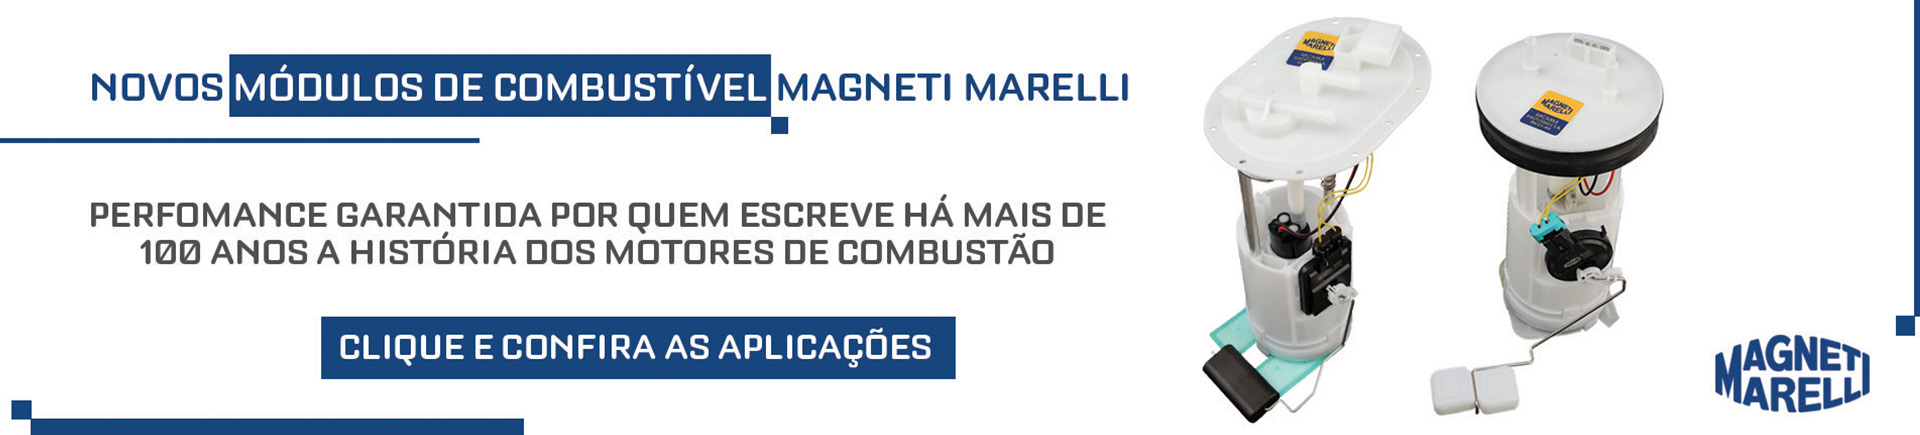 https://uniaopecas.com.br/Marelli 10/01/2021